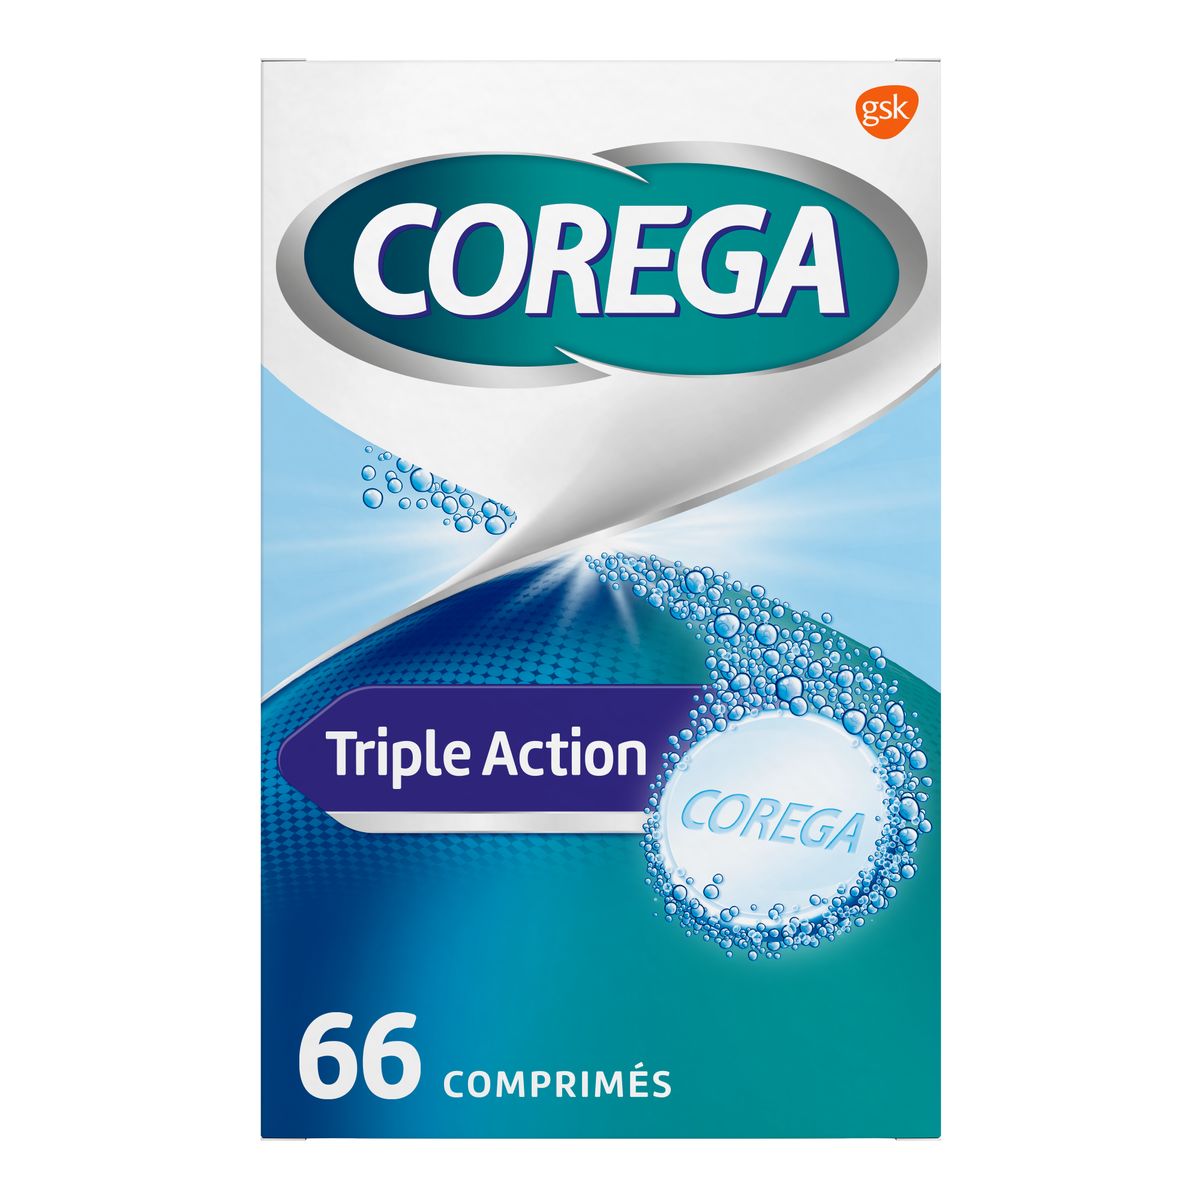 Corega Triple Action 66 comprimés